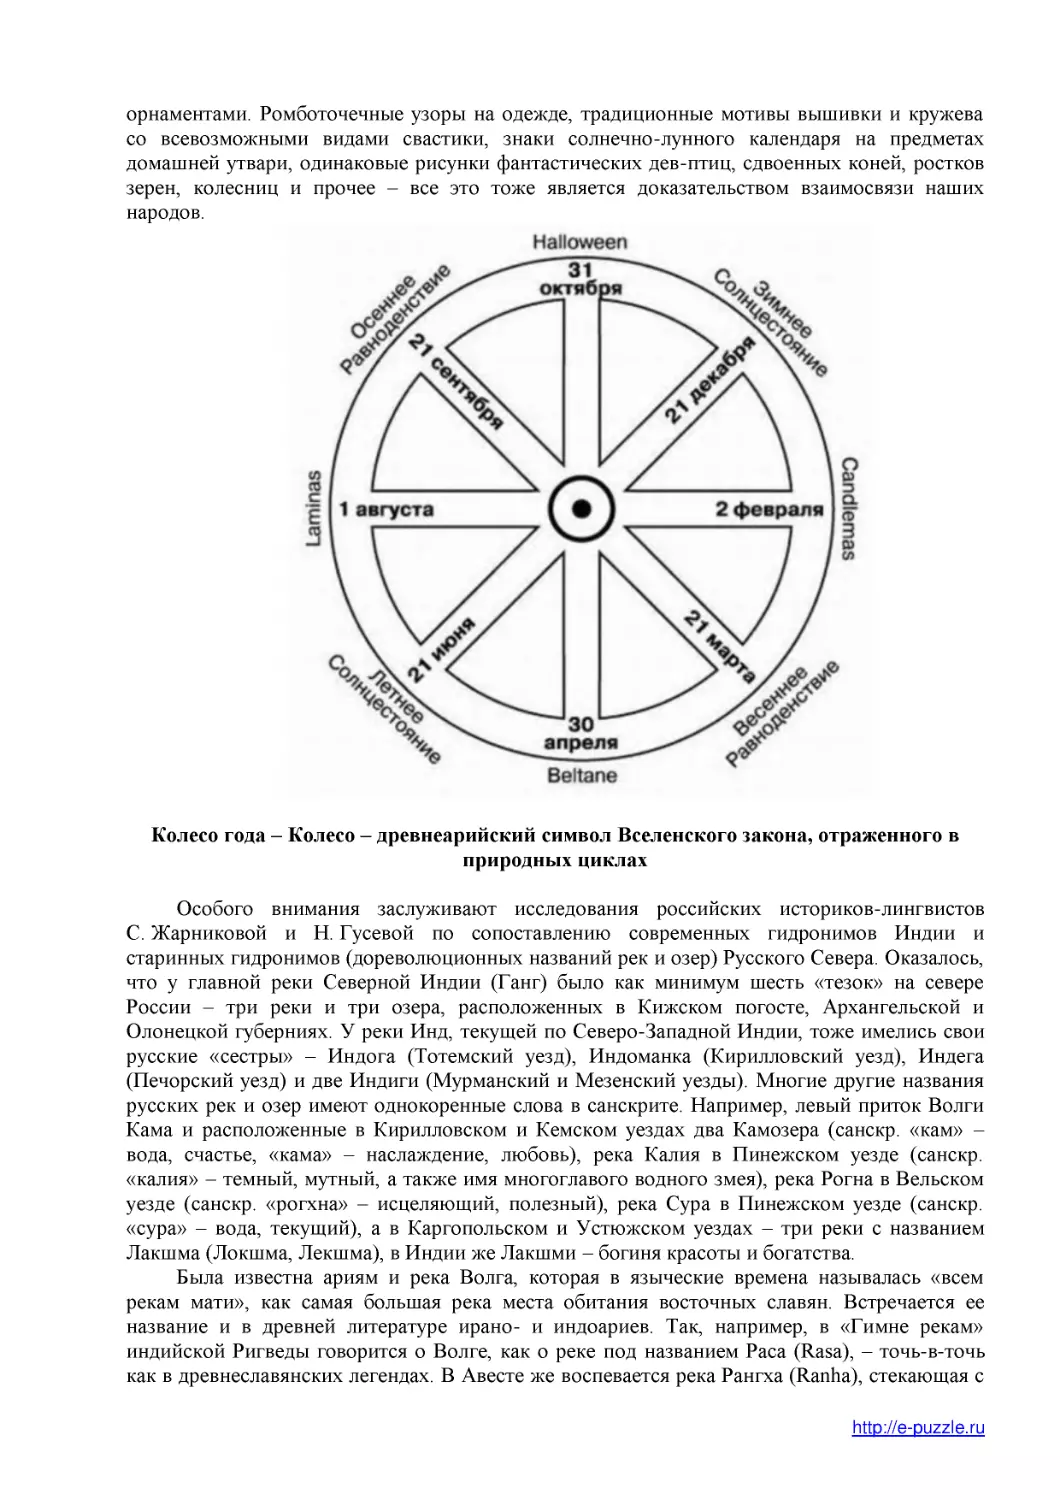 Колесо года – Колесо – древнеарийский символ Вселенского закона, отраженного в природных циклах